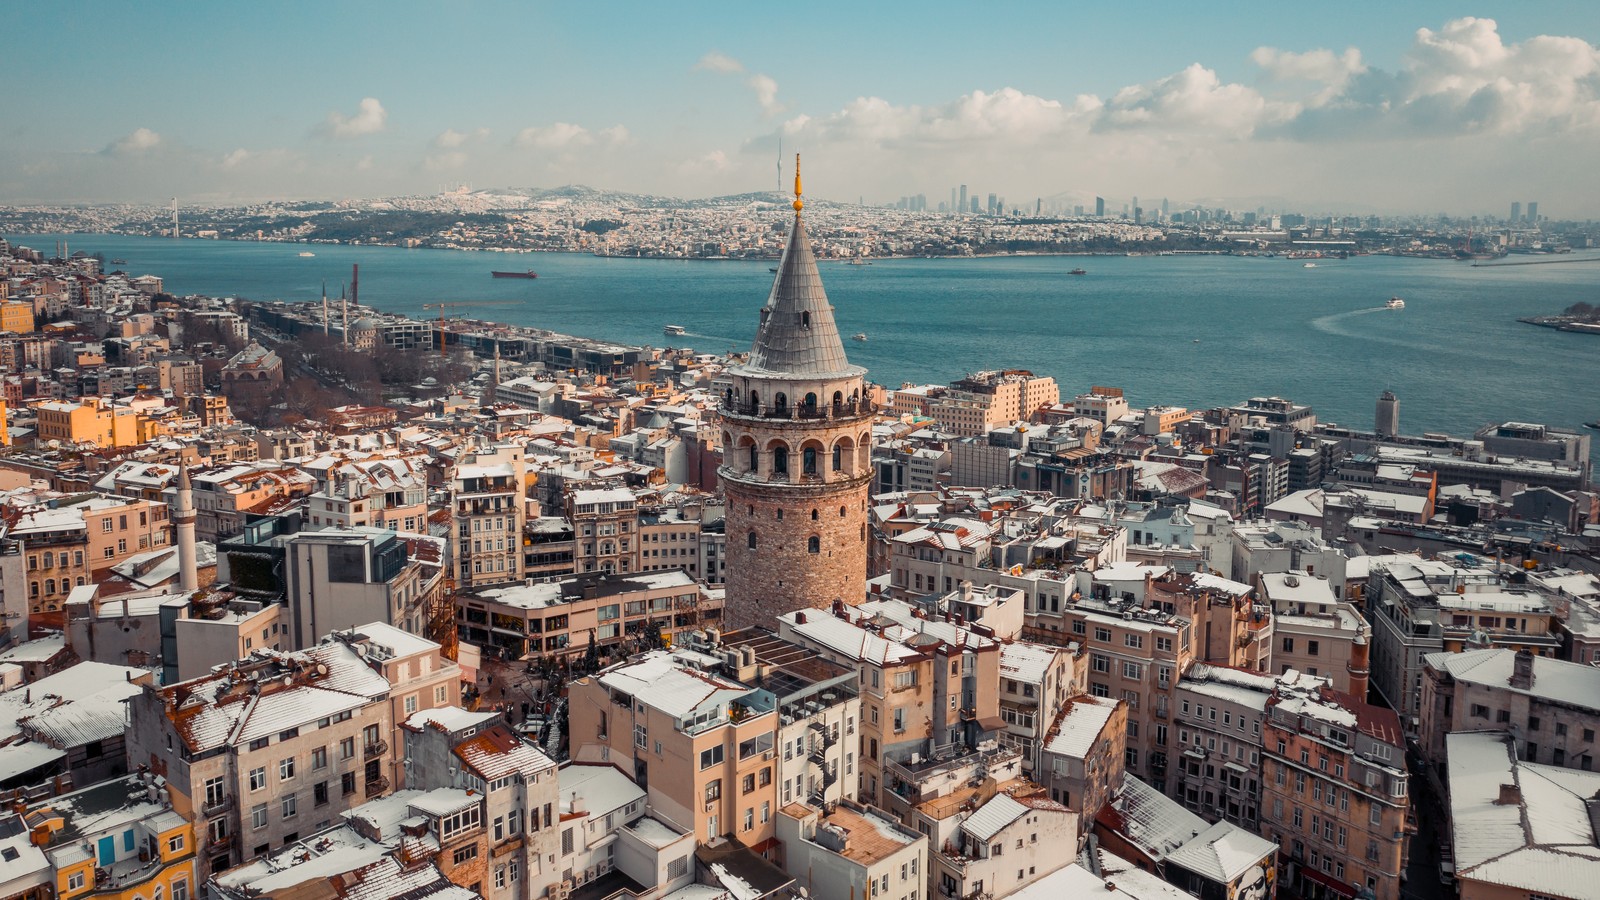 イスラム嫌悪からトルコに移住する世界のムスリム・エリートたち「人と知の中心」イスタンブールで進む文明の再編